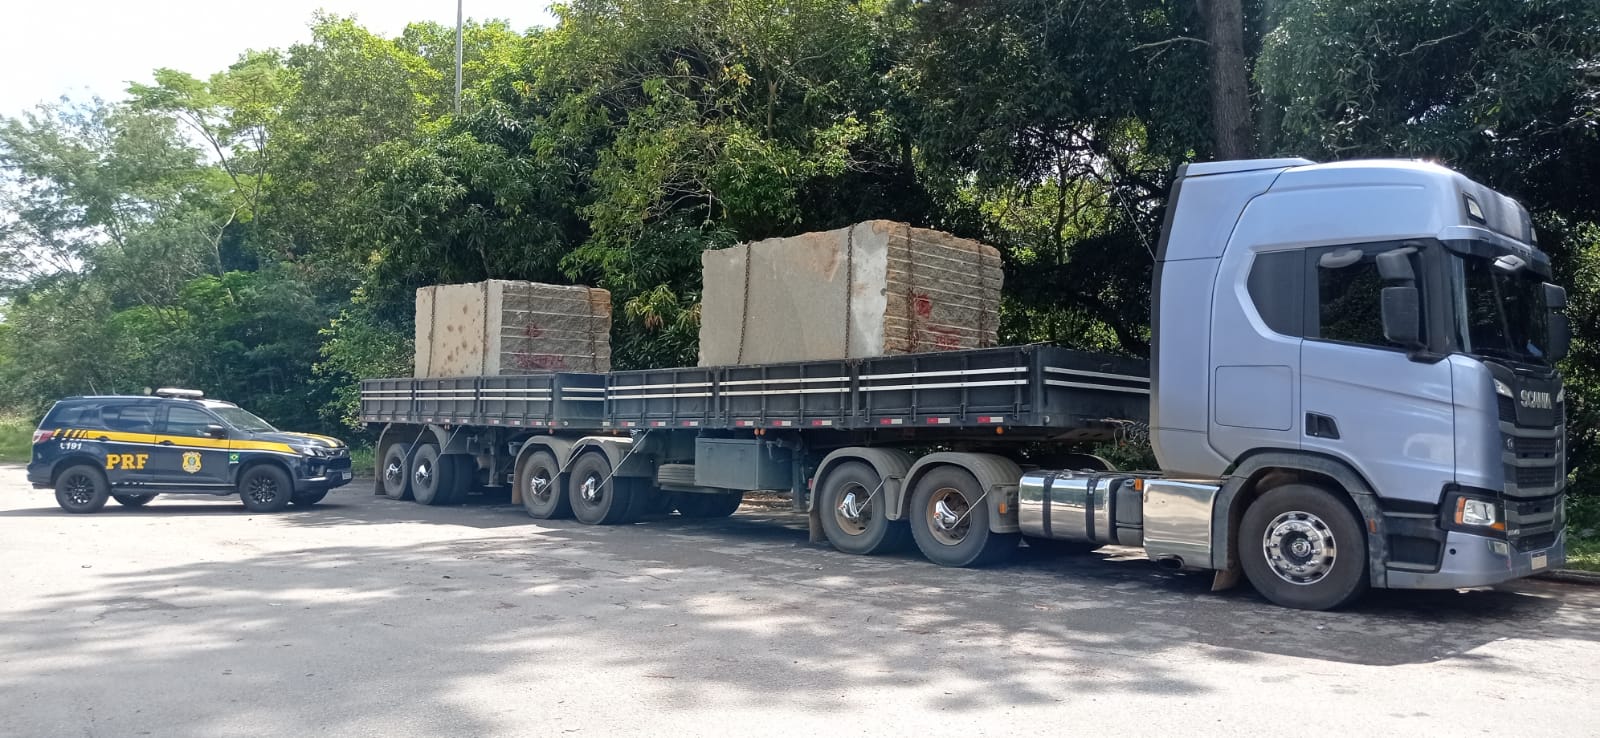 Veículo transportando blocos de pedra sem nota fiscal foi retido pela Polícia Rodoviária Federal na manhã desta quinta-feira (21); caminhão foi apreendido e levado para pátio da PRF